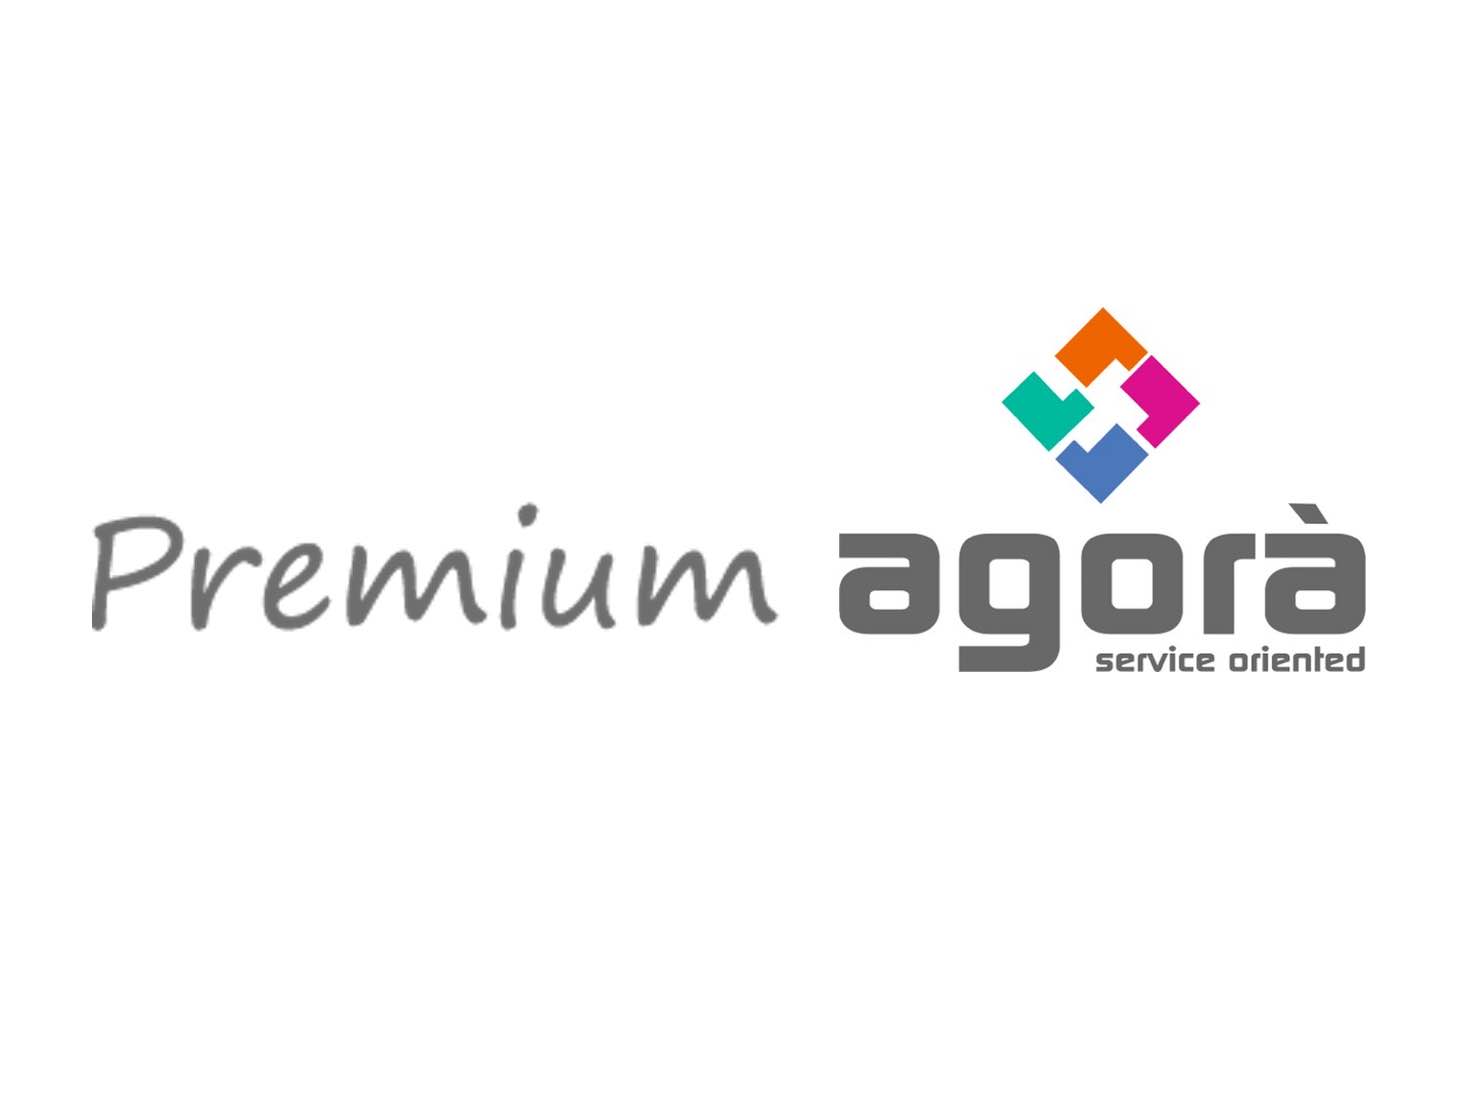 Premium Club Agorà